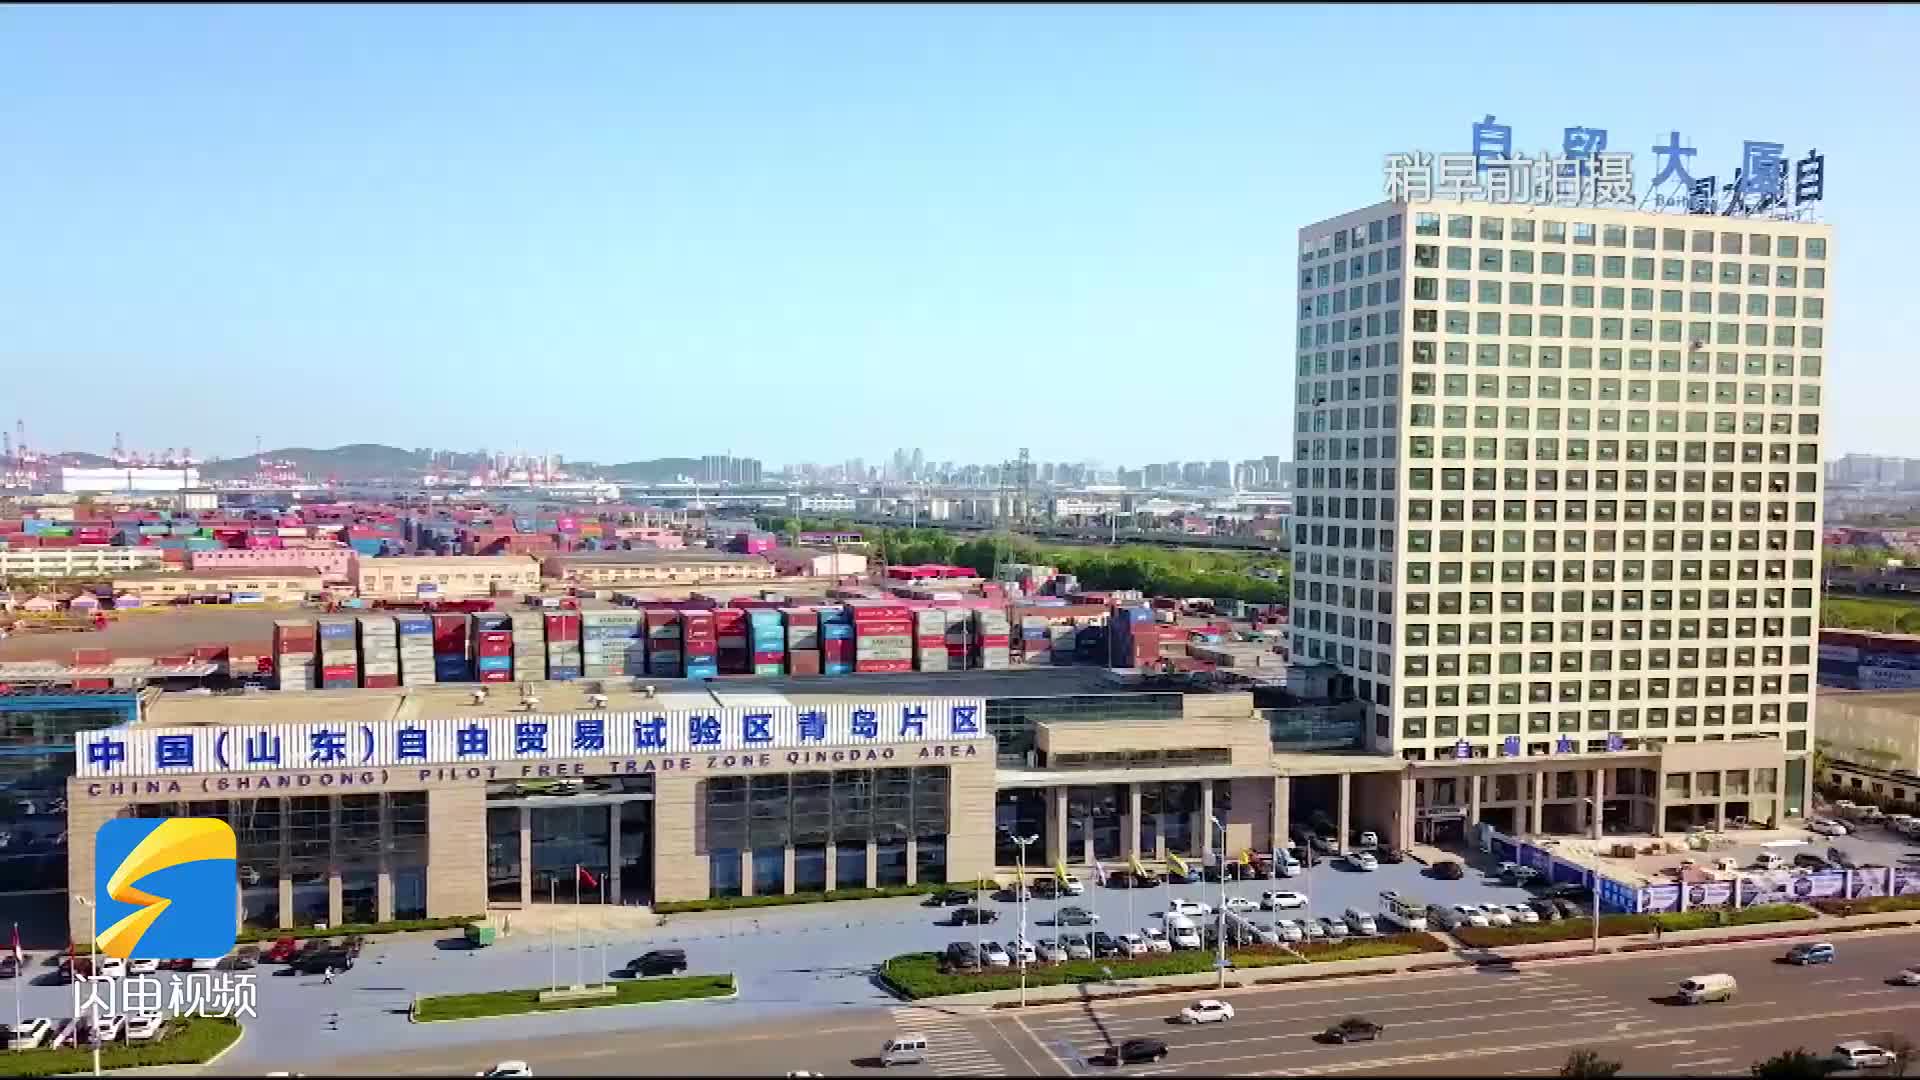 齐风鲁韵丨聚集高端服务业 建设世界一流大港